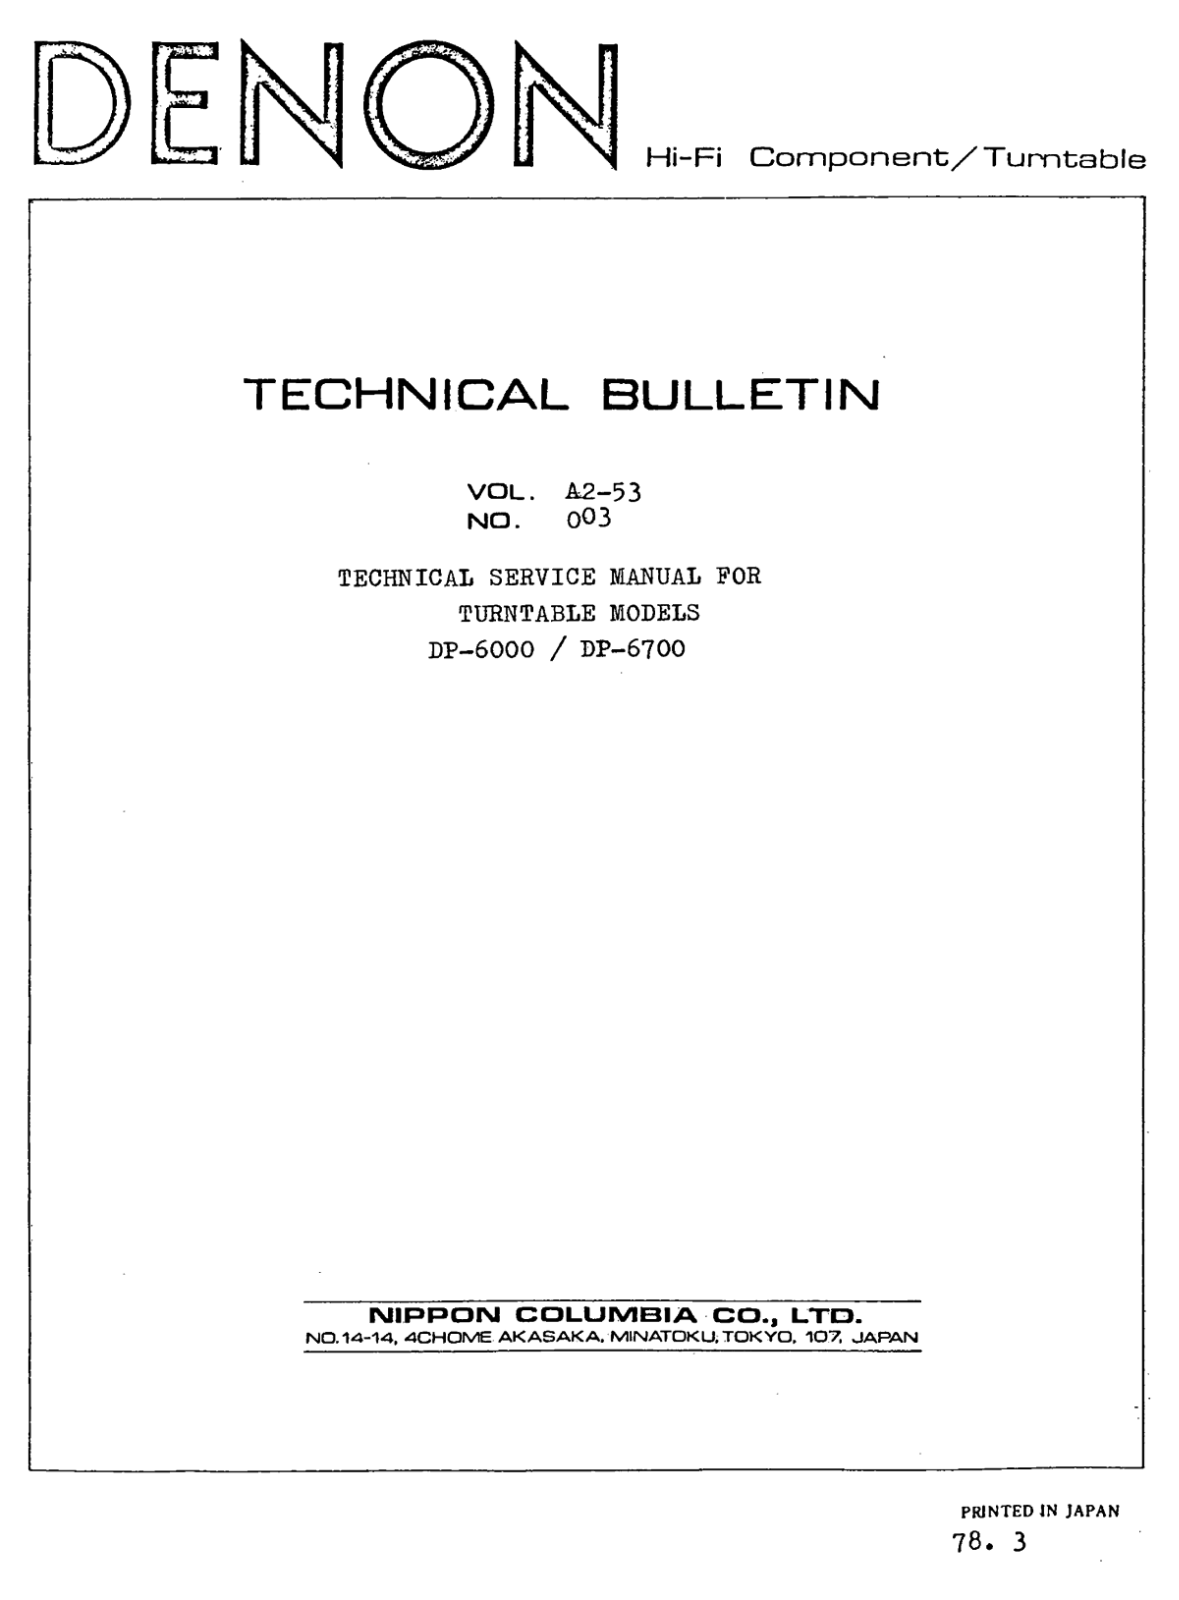 Denon DP-6000, DP-6700 Service Manual